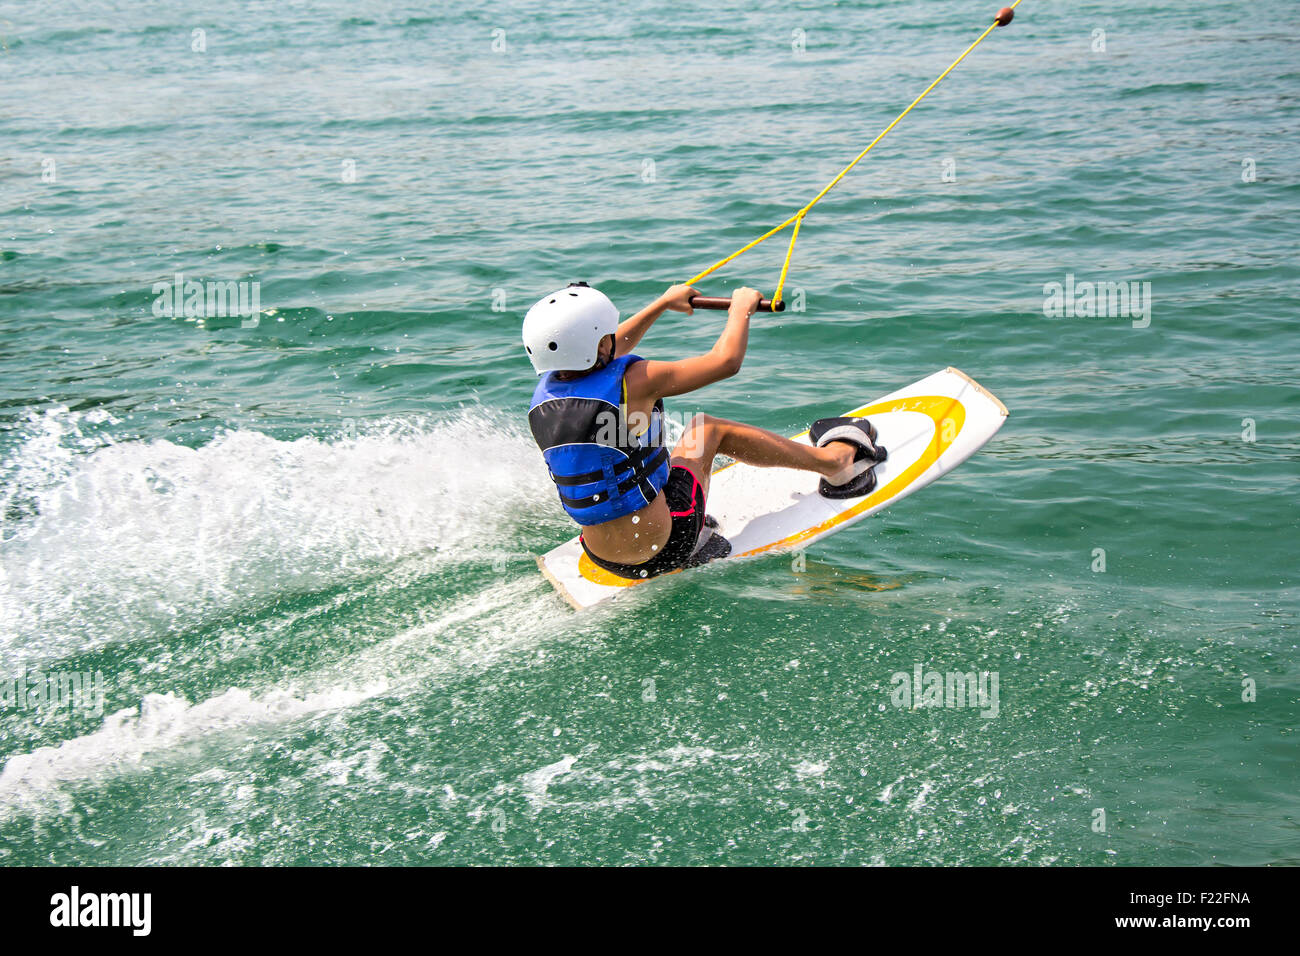 Ein junger Wakeboarder in Aktion auf dem See Stockfoto